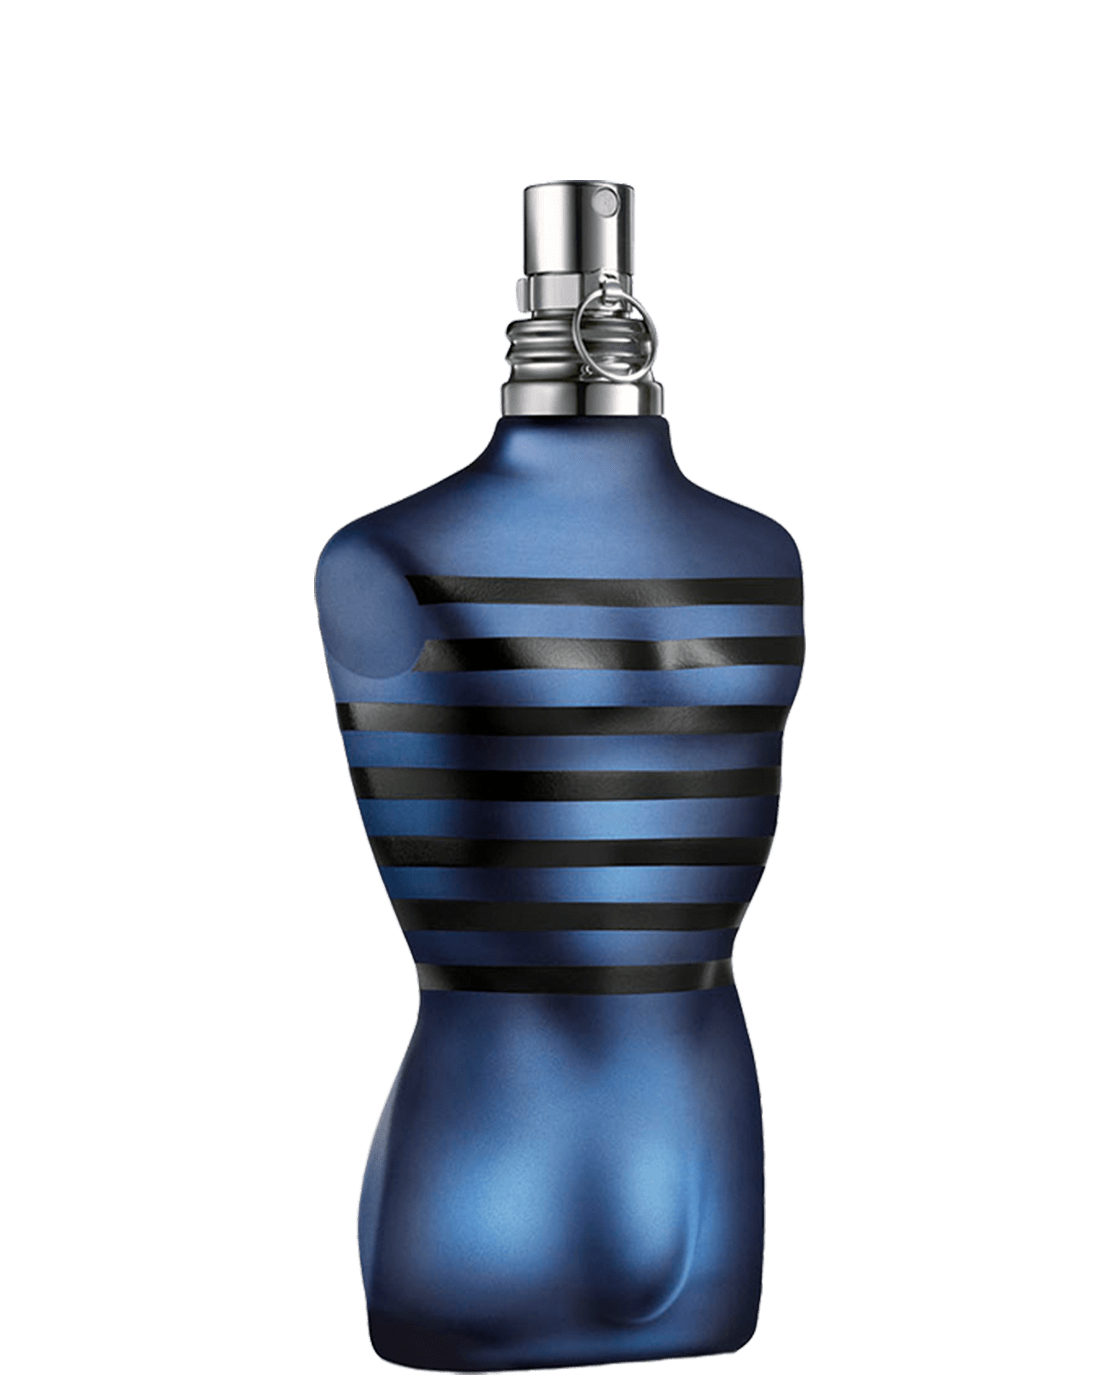 Jean Paul Gaultier Ultra Male For Men Eau de Toilette Intense - Le  Parfumier Perfume Store